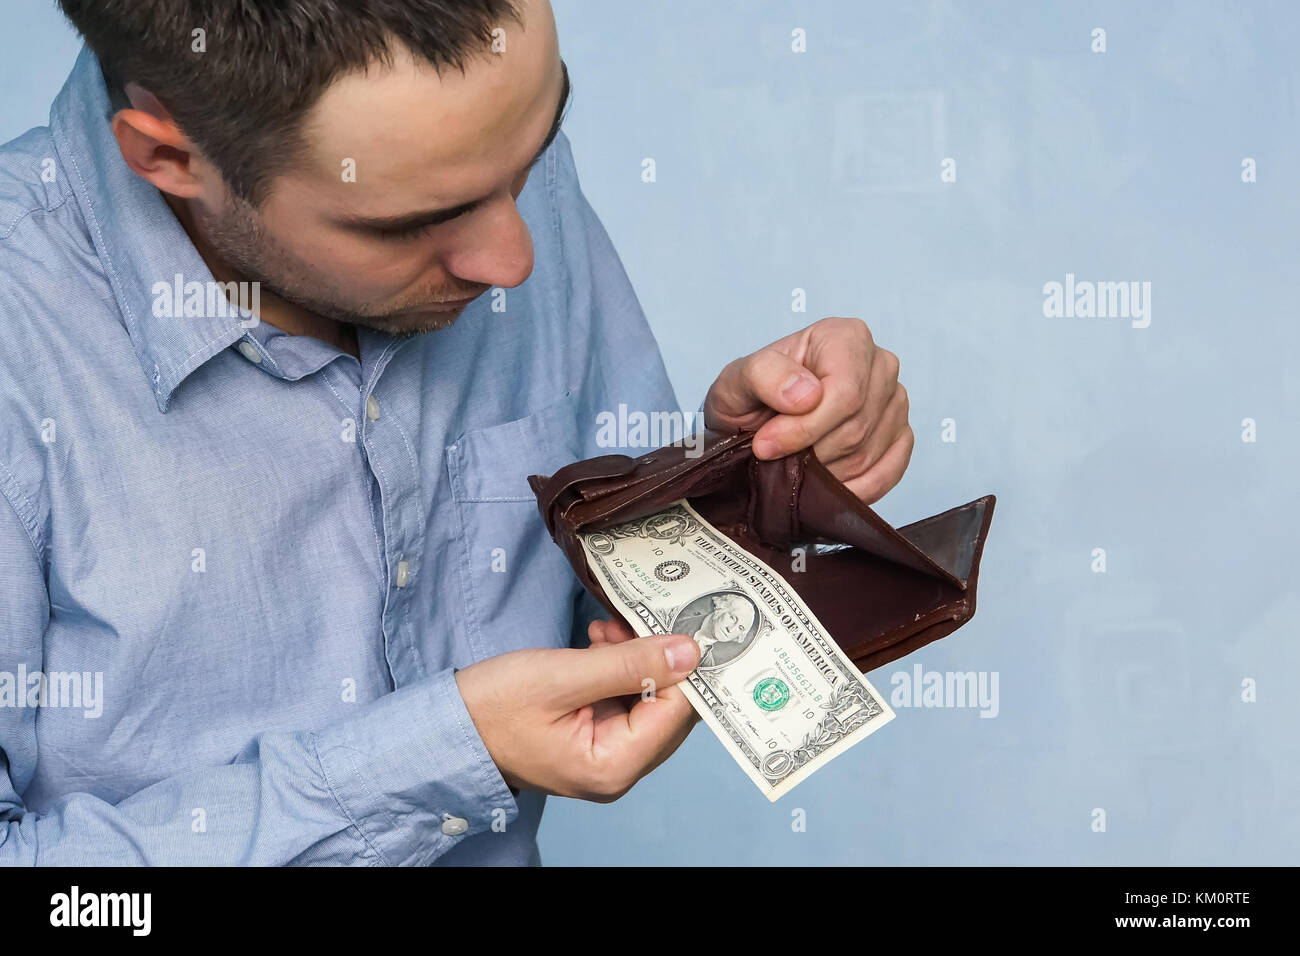 L'uomo ottiene denaro dal portafogli. mani close-up tenendo un dollaro e un portafoglio in pelle. la povertà e la disoccupazione. Foto Stock